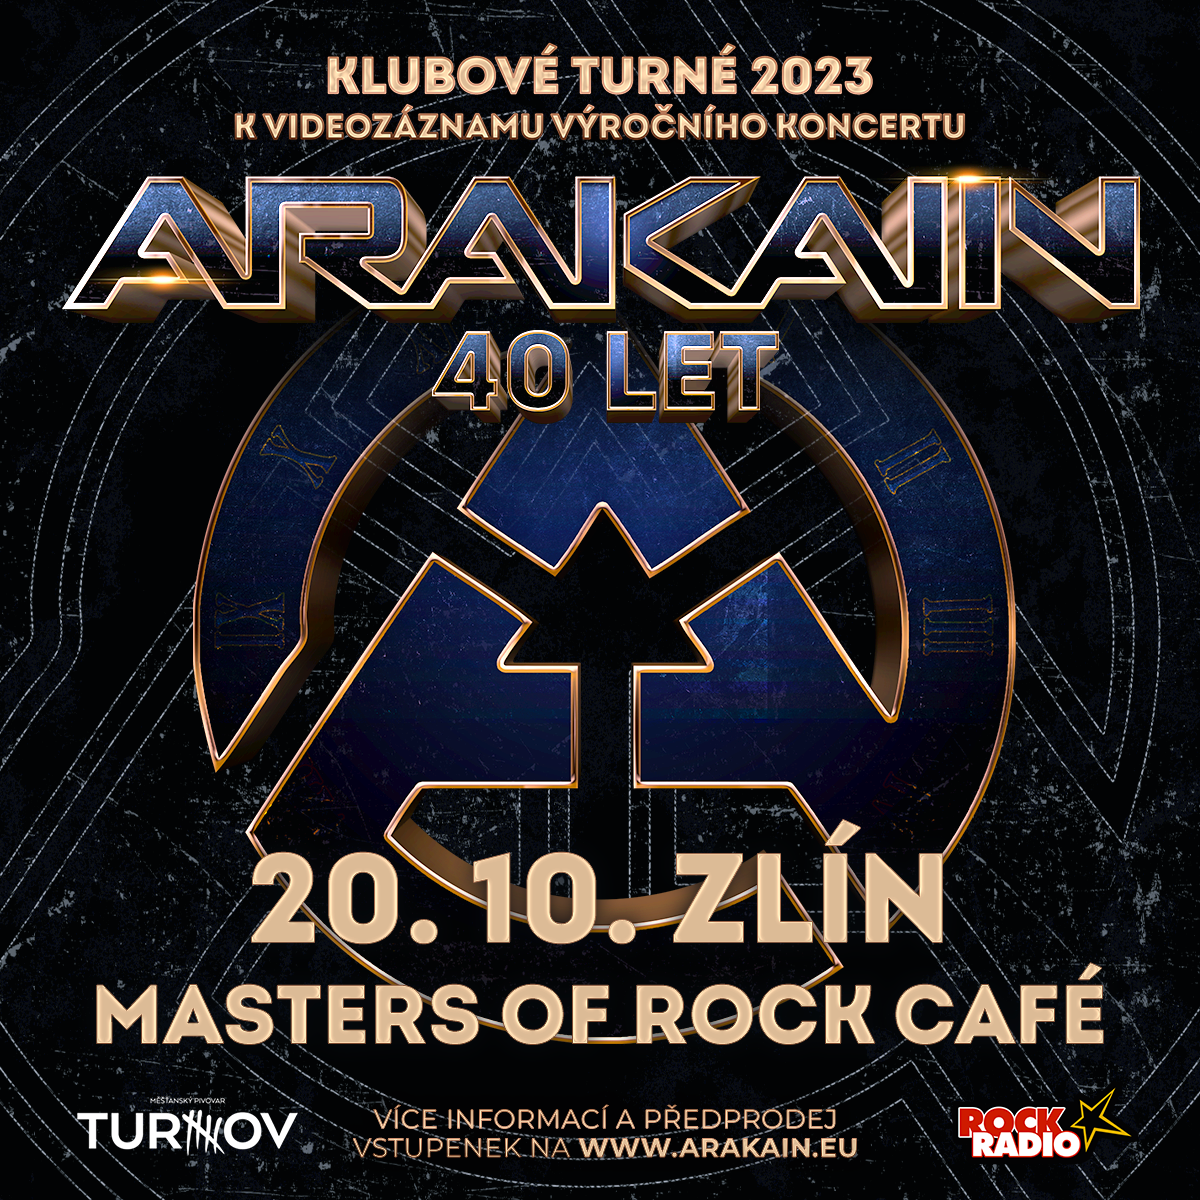 ARAKAIN 40 LET/KLUBOVÉ TURNÉ 2023/- Zlín -Masters Of Rock Café Zlín